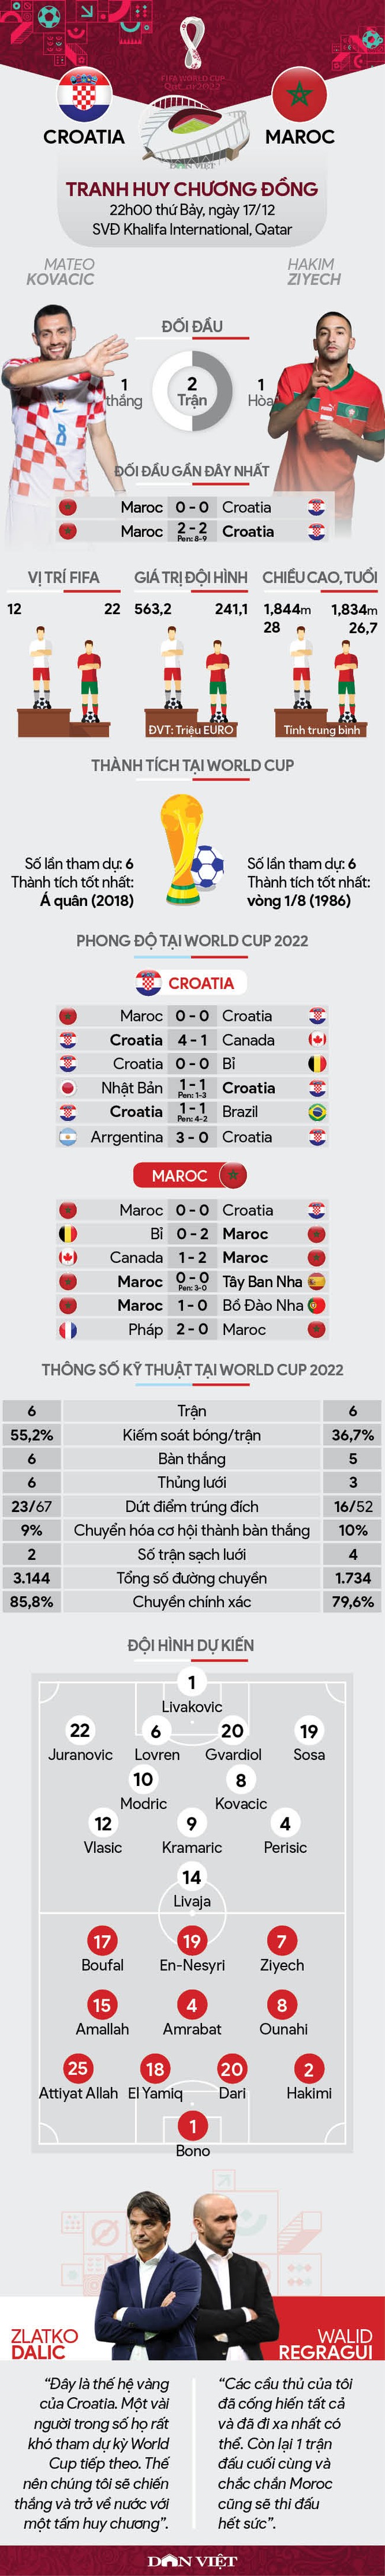 Tương quan lực lượng Croatia vs Maroc (22h00 ngày 17/12, tranh huy chương Đồng - World Cup 2022): Cả nhà cùng vui - Ảnh 1.